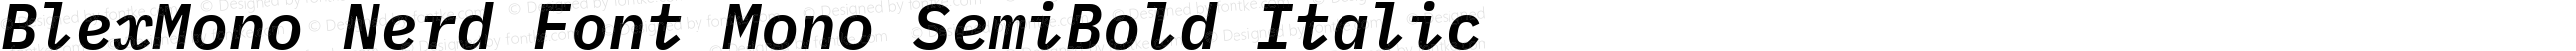 Blex Mono SemiBold Italic Nerd Font Complete Mono